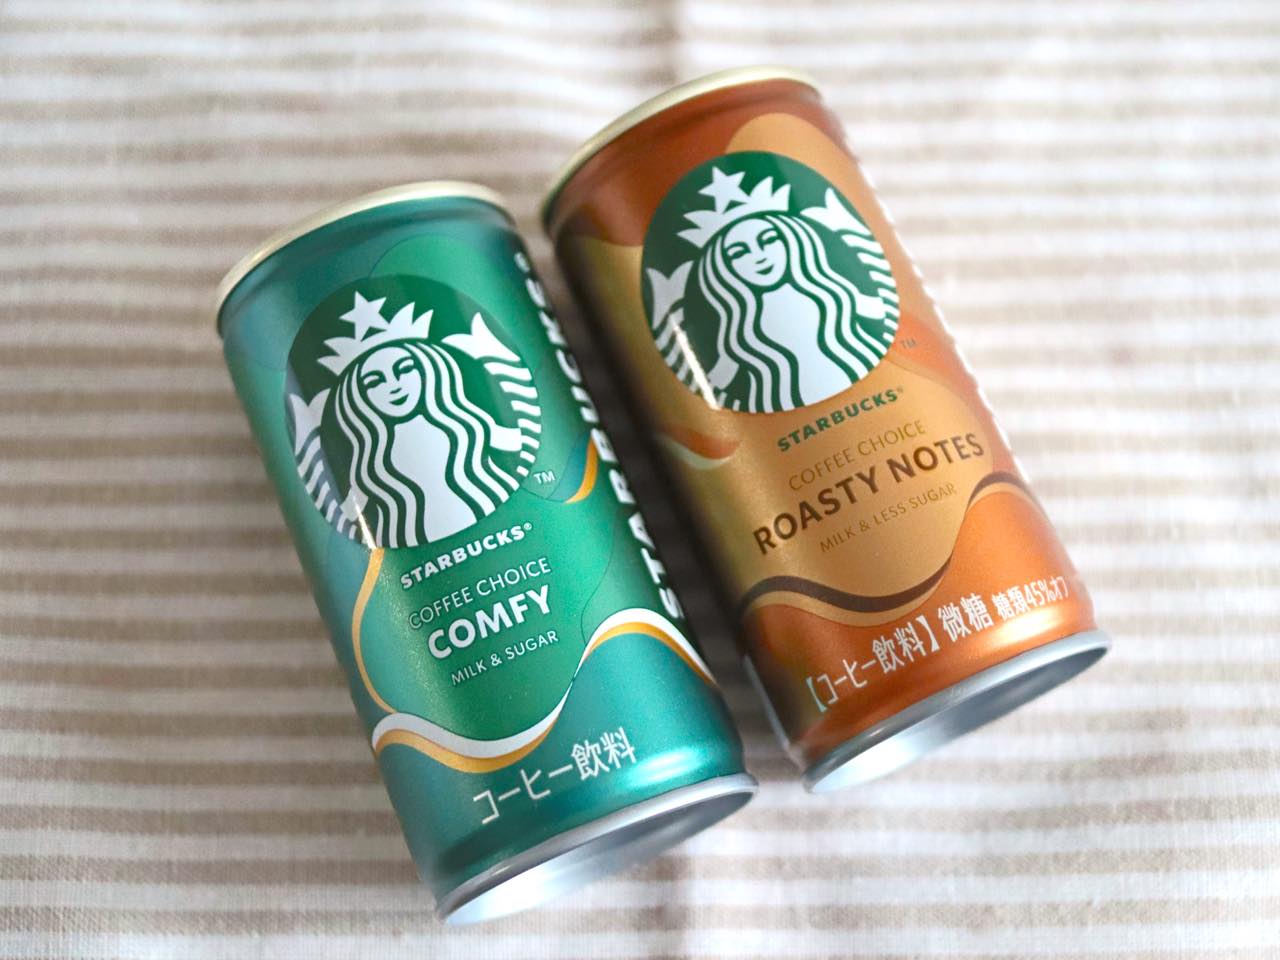 左：「スターバックス COFFEE CHOICE コンフィ」、右：「スターバックス COFFEE CHOICE ロースティノーツ」各129円